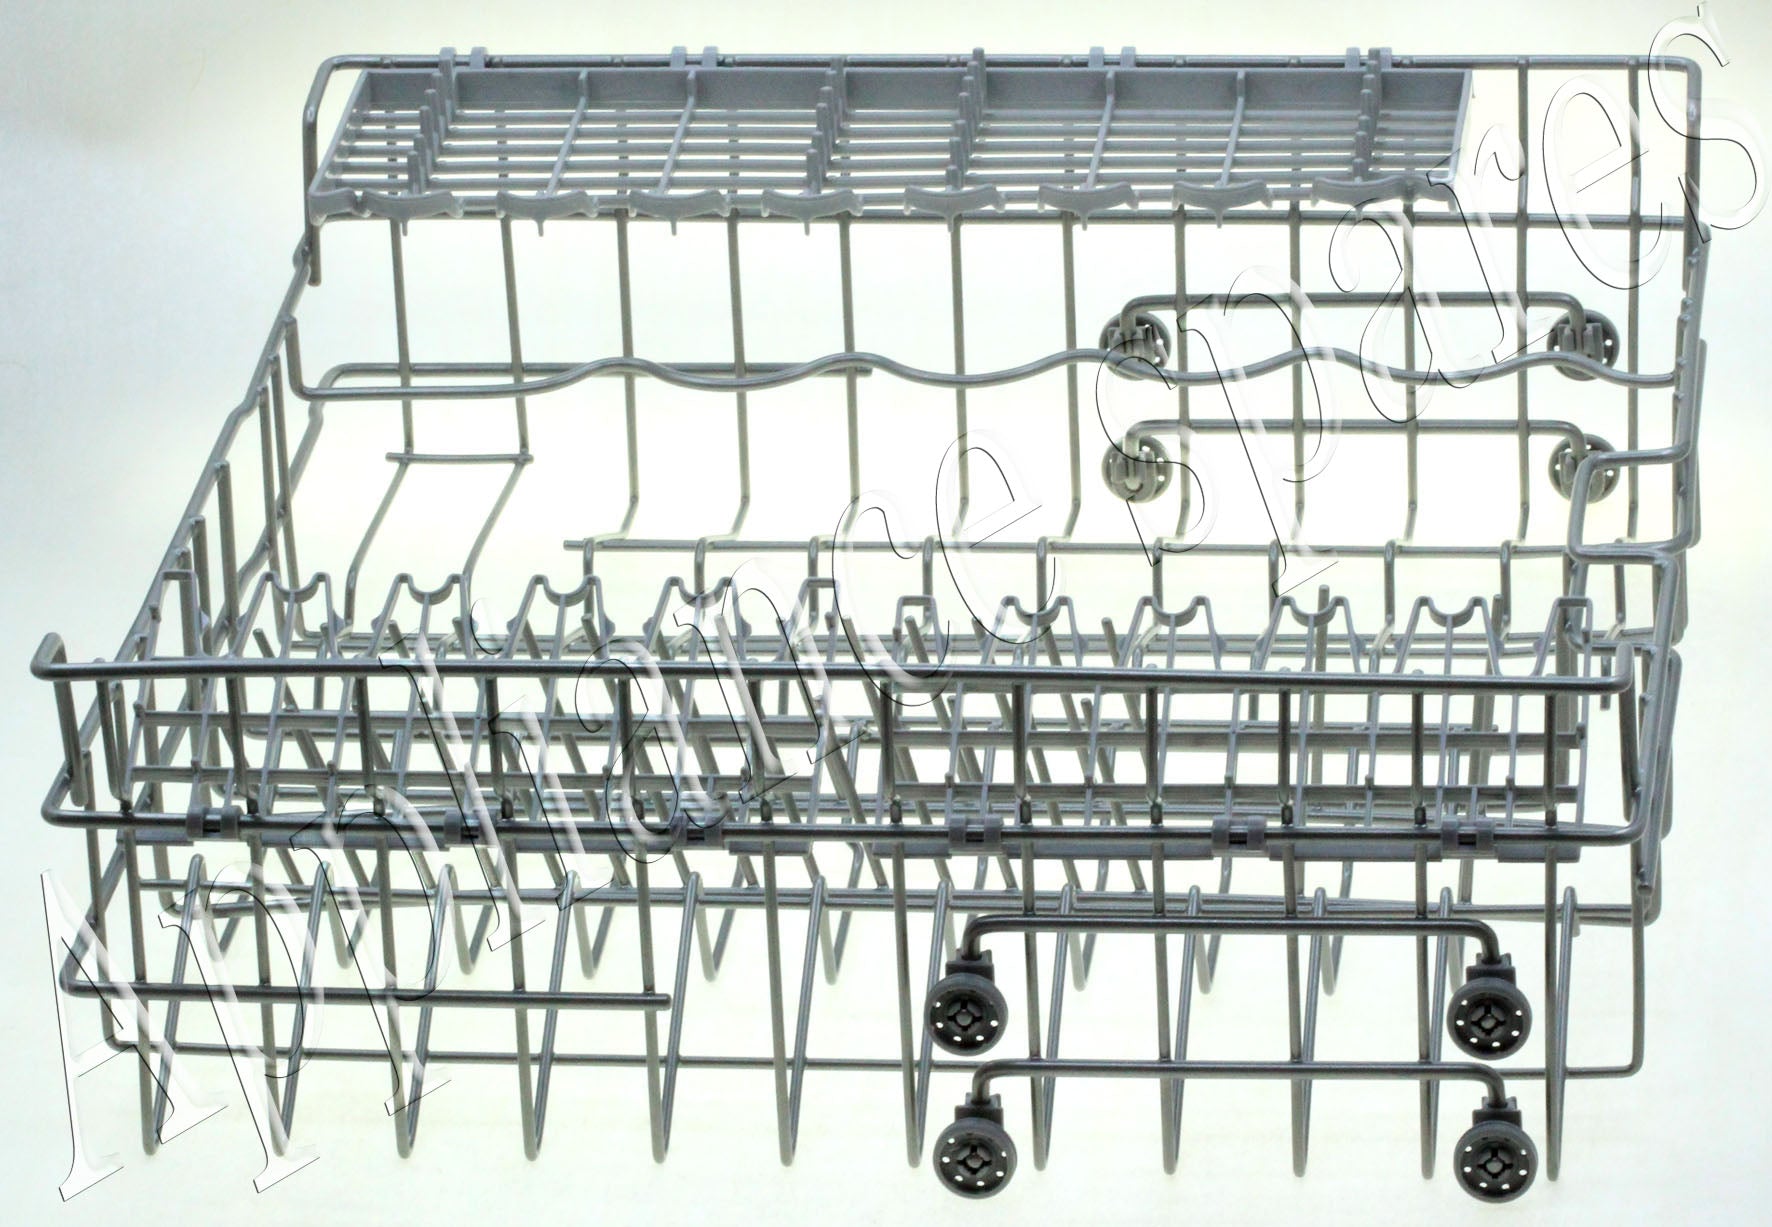 LG Dishwasher Upper Basket Assembly